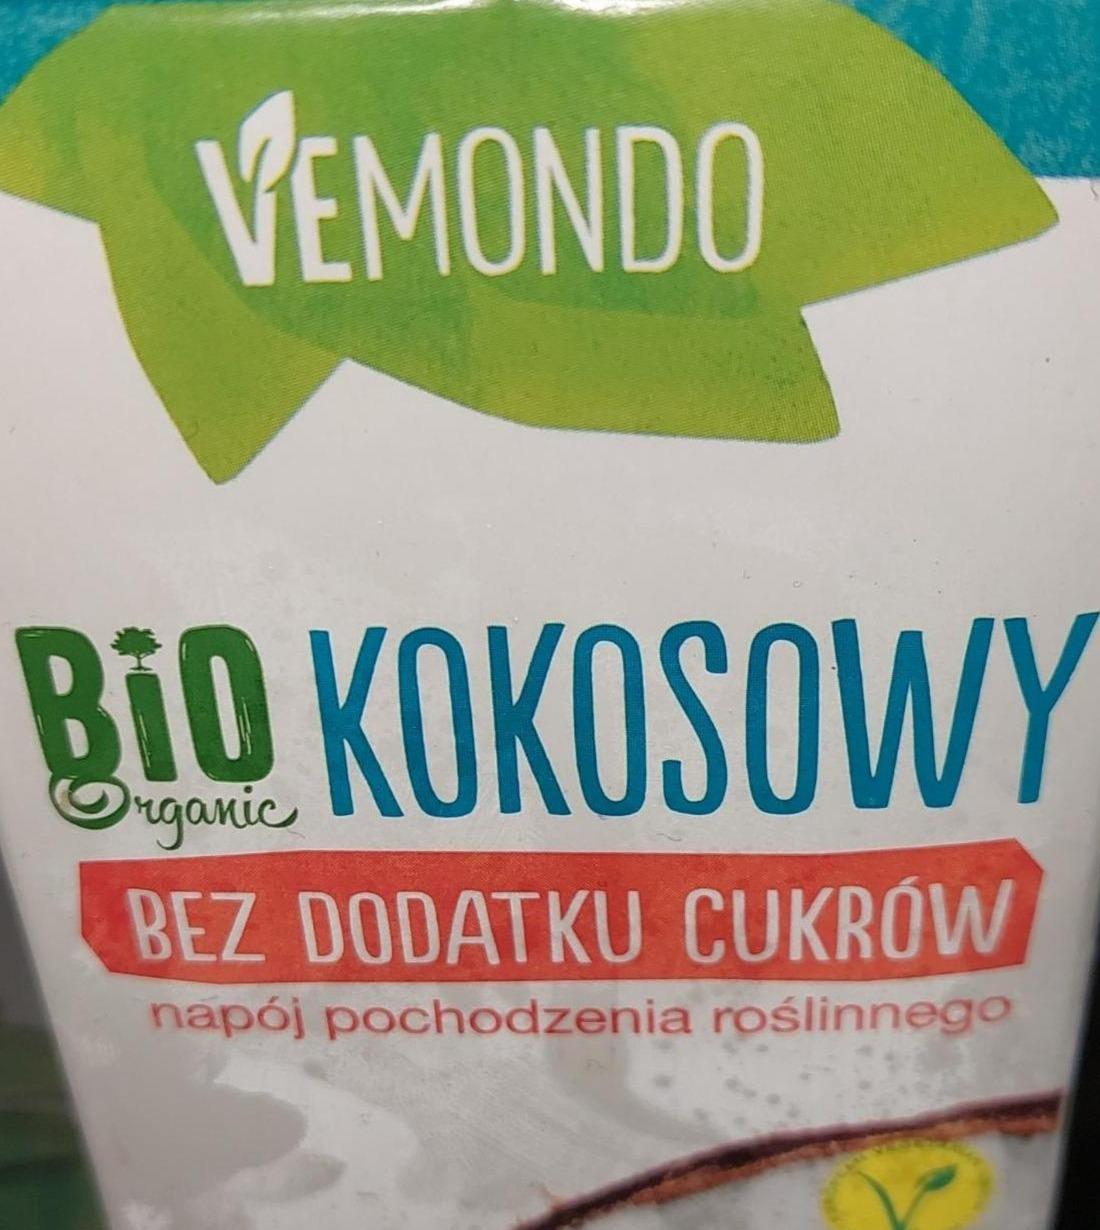 Фото - Bio napoj kokosowy Produkt UNT Produkt ekologiczny Vemondo